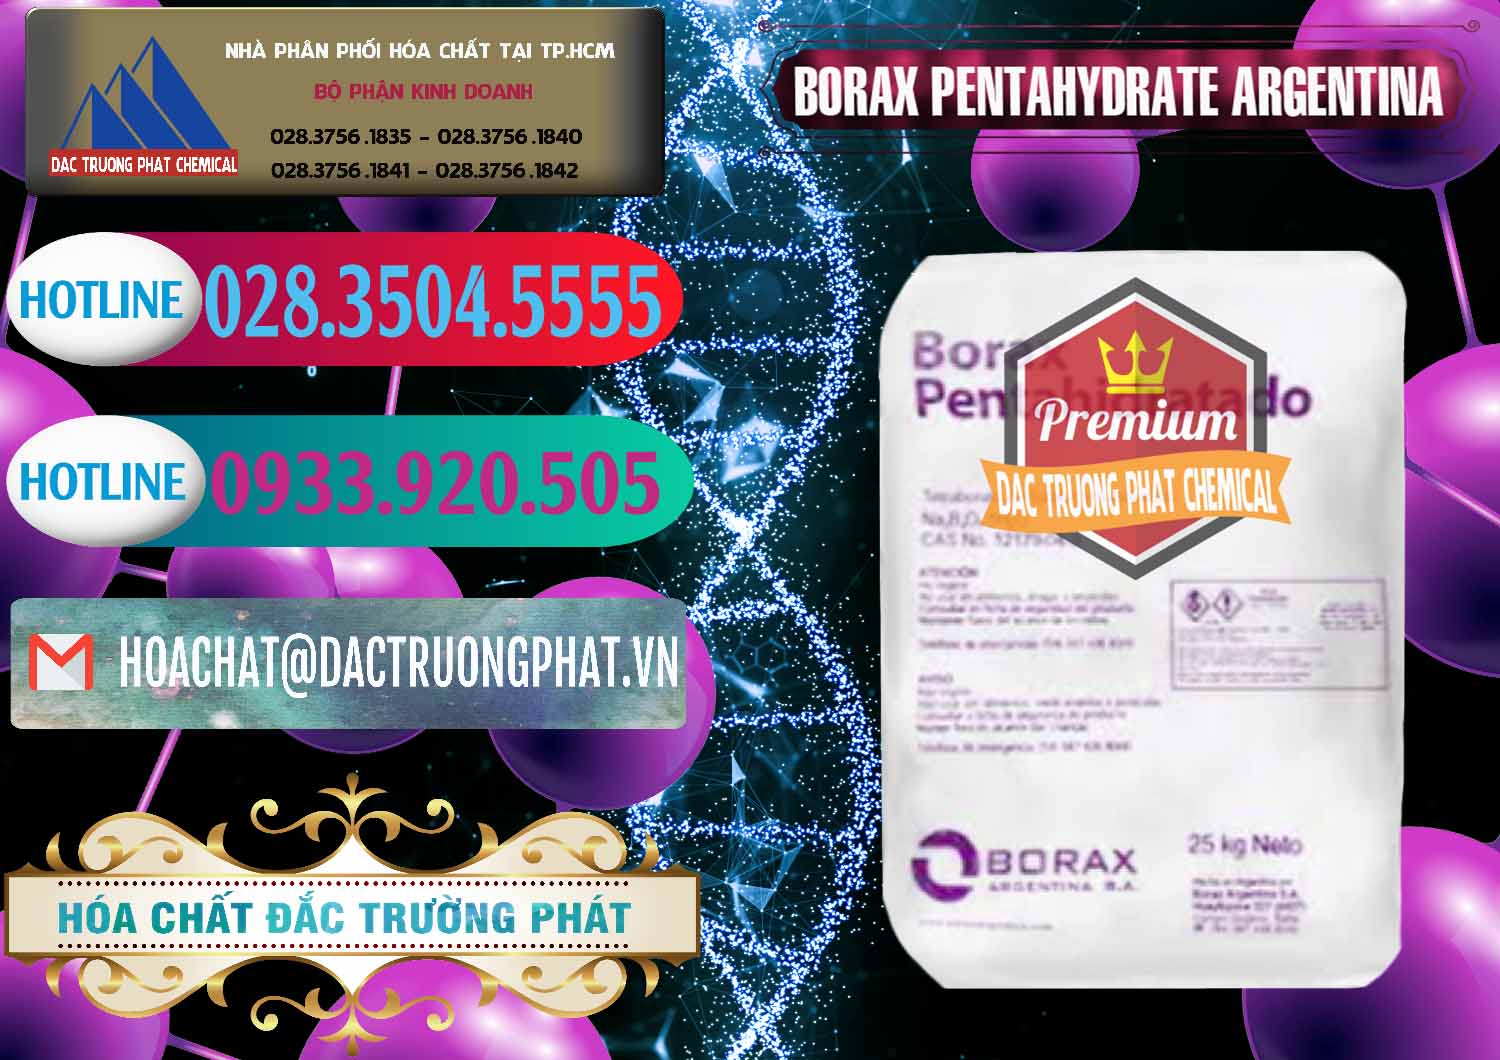 Bán và cung cấp Borax Pentahydrate Argentina - 0447 - Cty bán & phân phối hóa chất tại TP.HCM - truongphat.vn